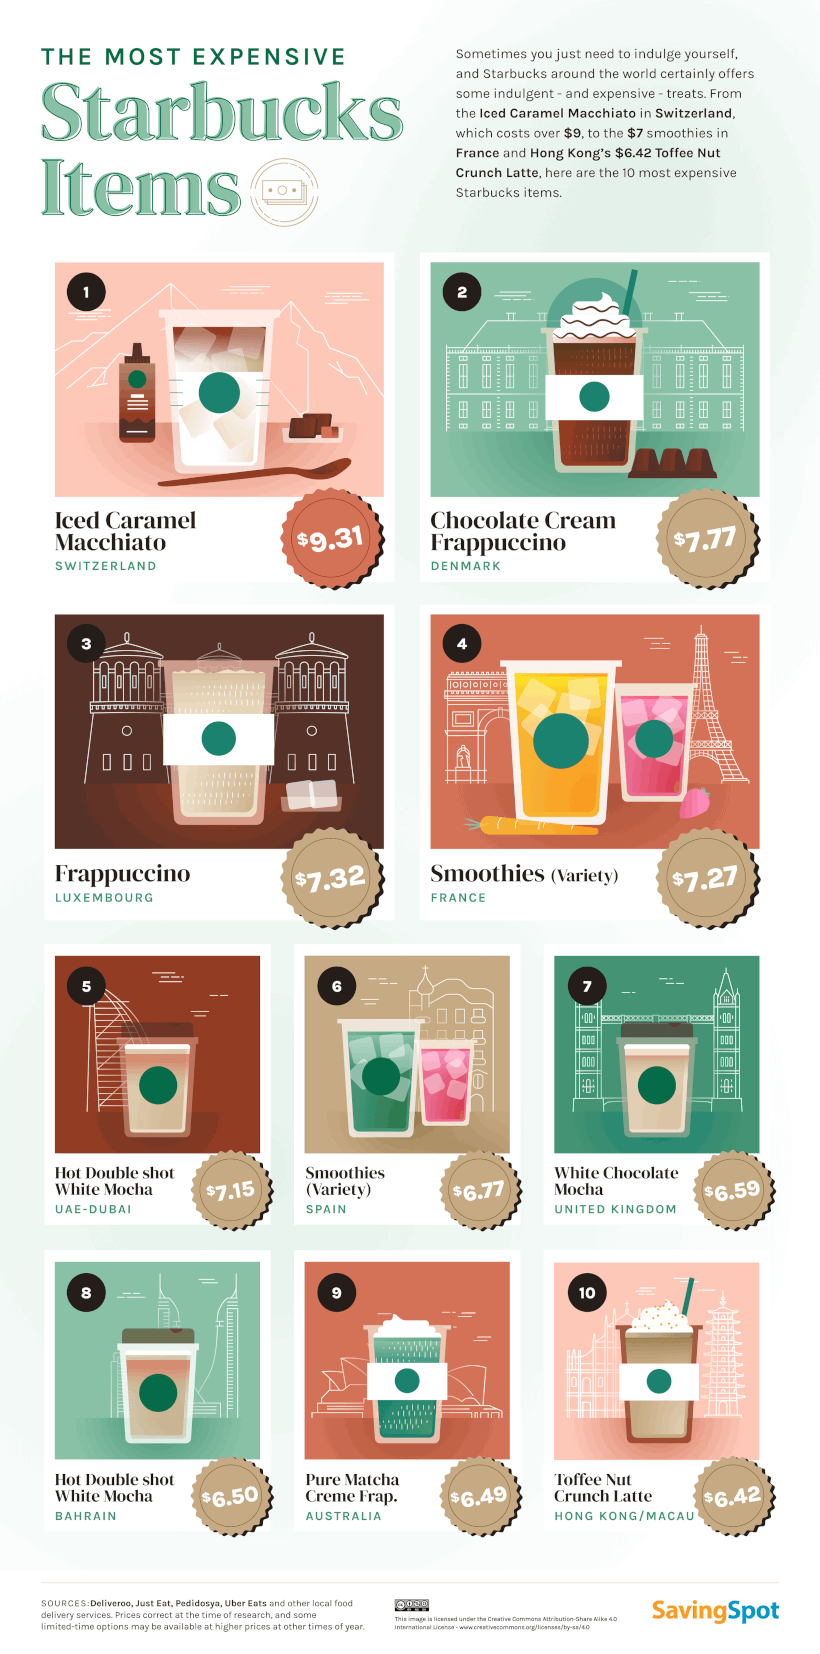 Un gráfico que muestra los 10 artículos más caros de Starbucks.  El Iced Caramel Macchiato en Suiza cuesta $9.31.